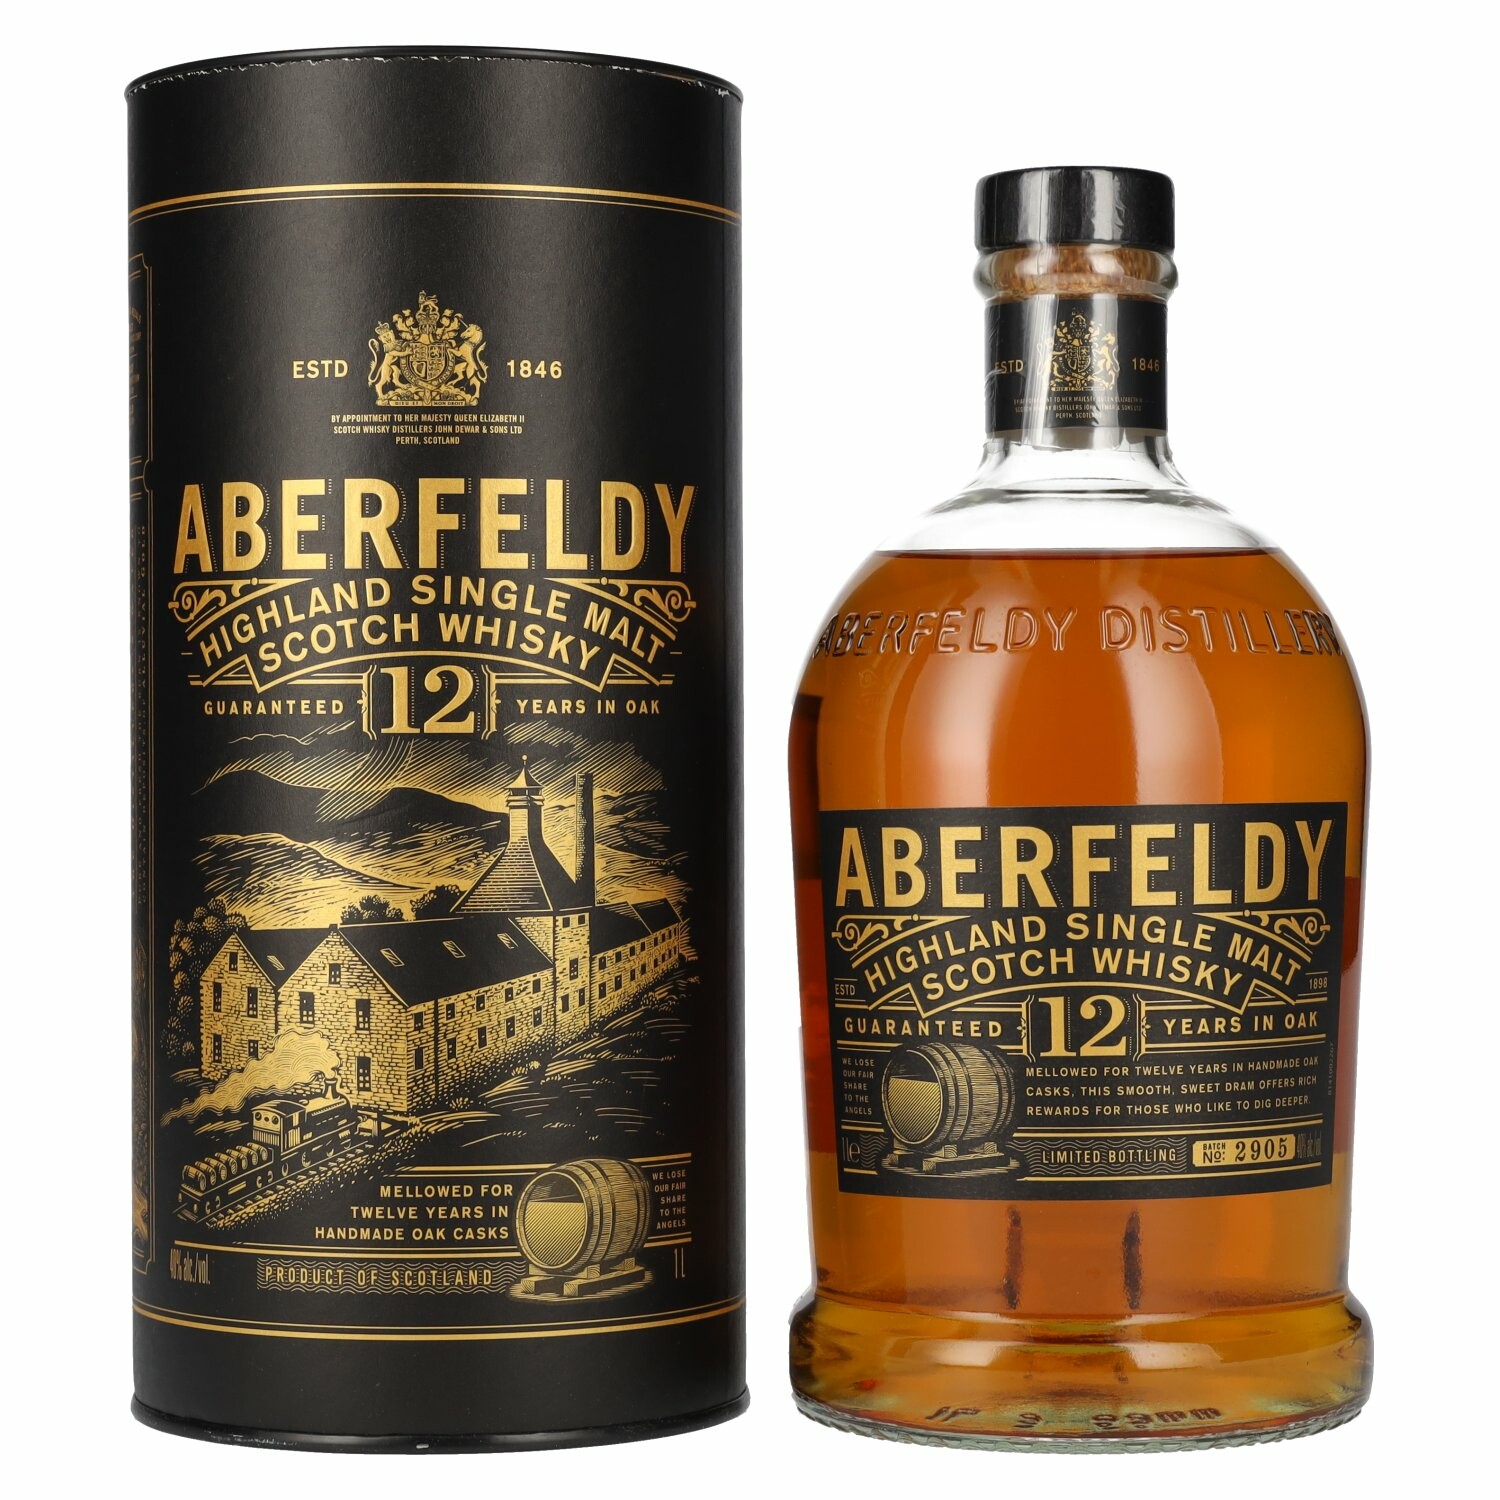 Aberfeldy 12 Years Old Highland Single Malt 40% Vol. 1l in Giftbox